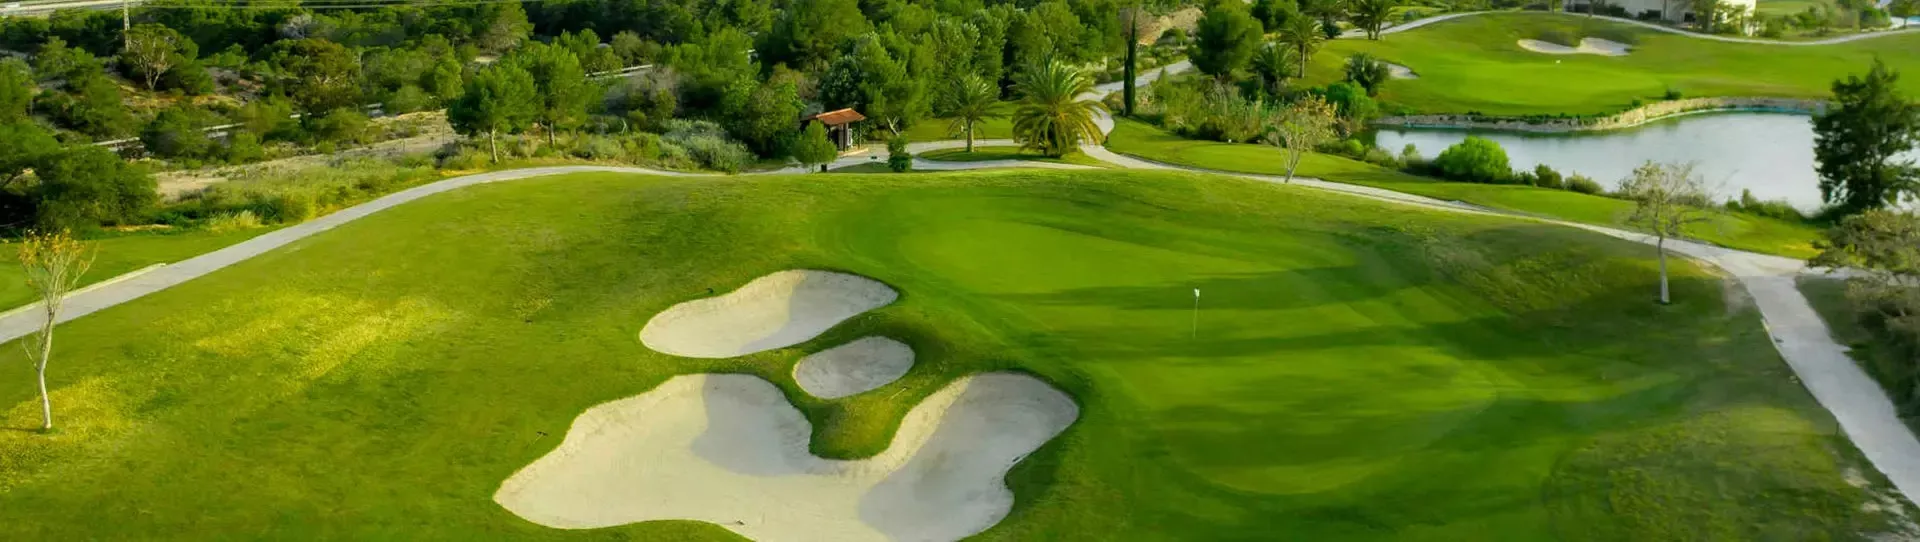 Spain golf courses - Villaitana Golf Course Levante - Photo 1